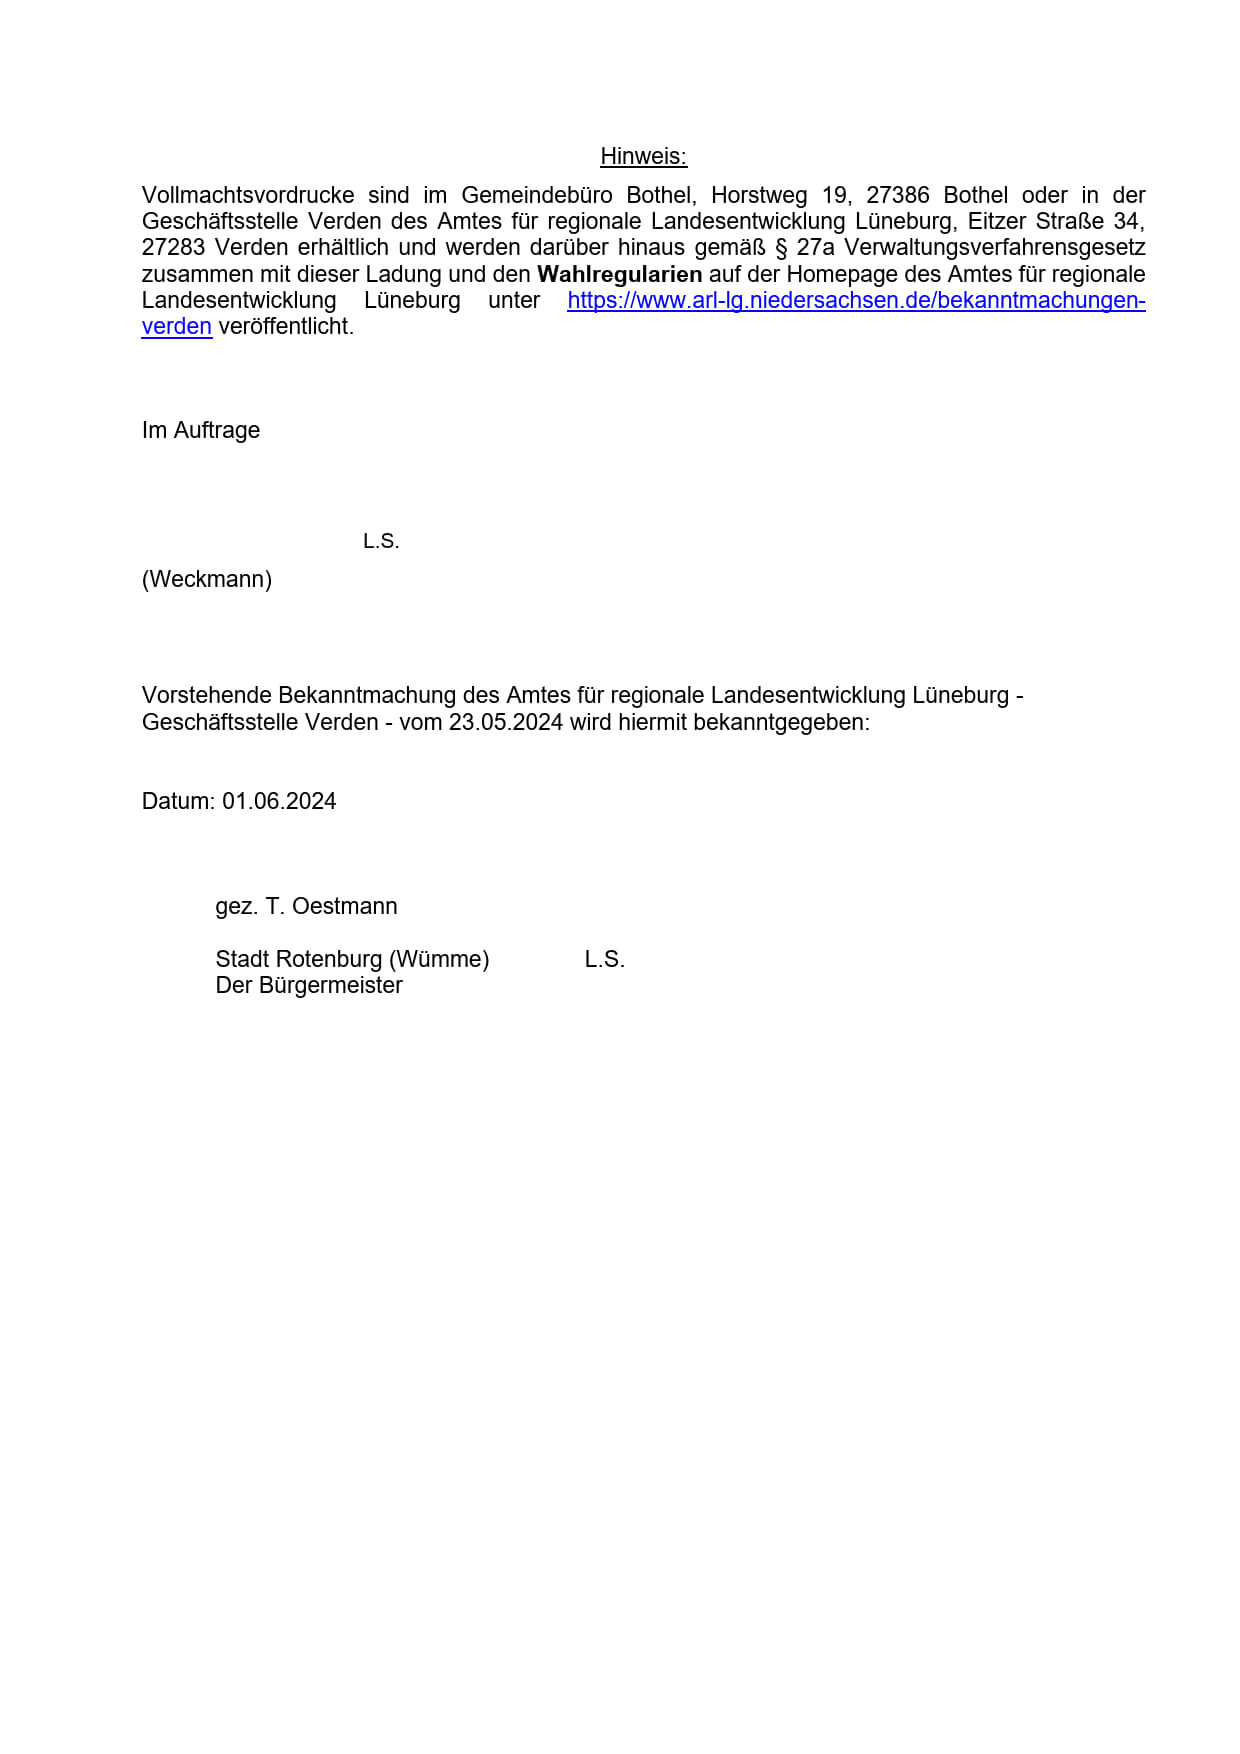 Bekanntmachung des Amts für regionale Landesentwicklung Lüneburg_2